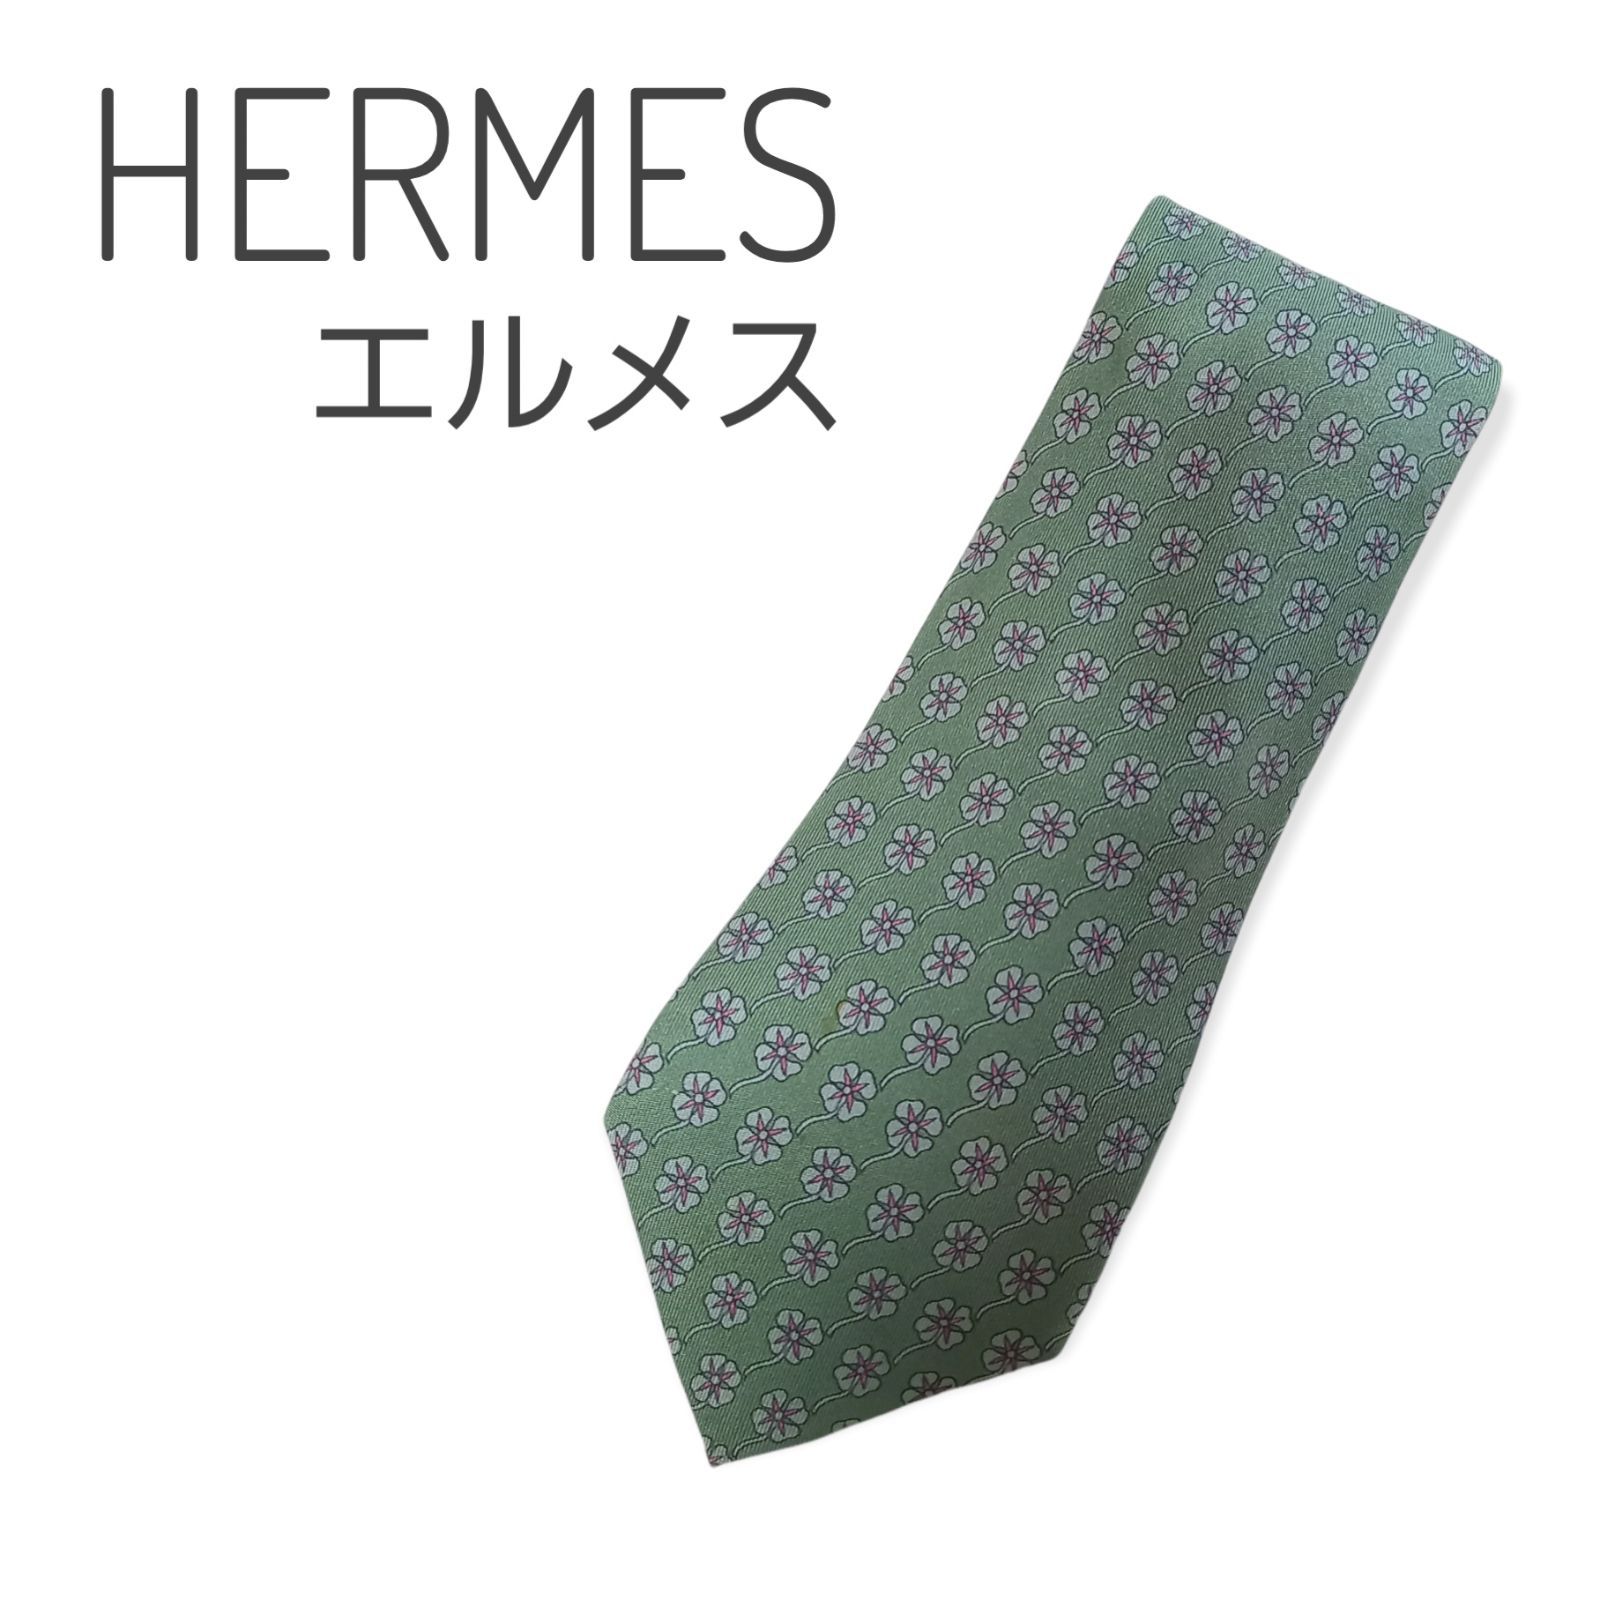 【美品】エルメス HERMES ネクタイ グリーン 緑 8cm幅 花柄